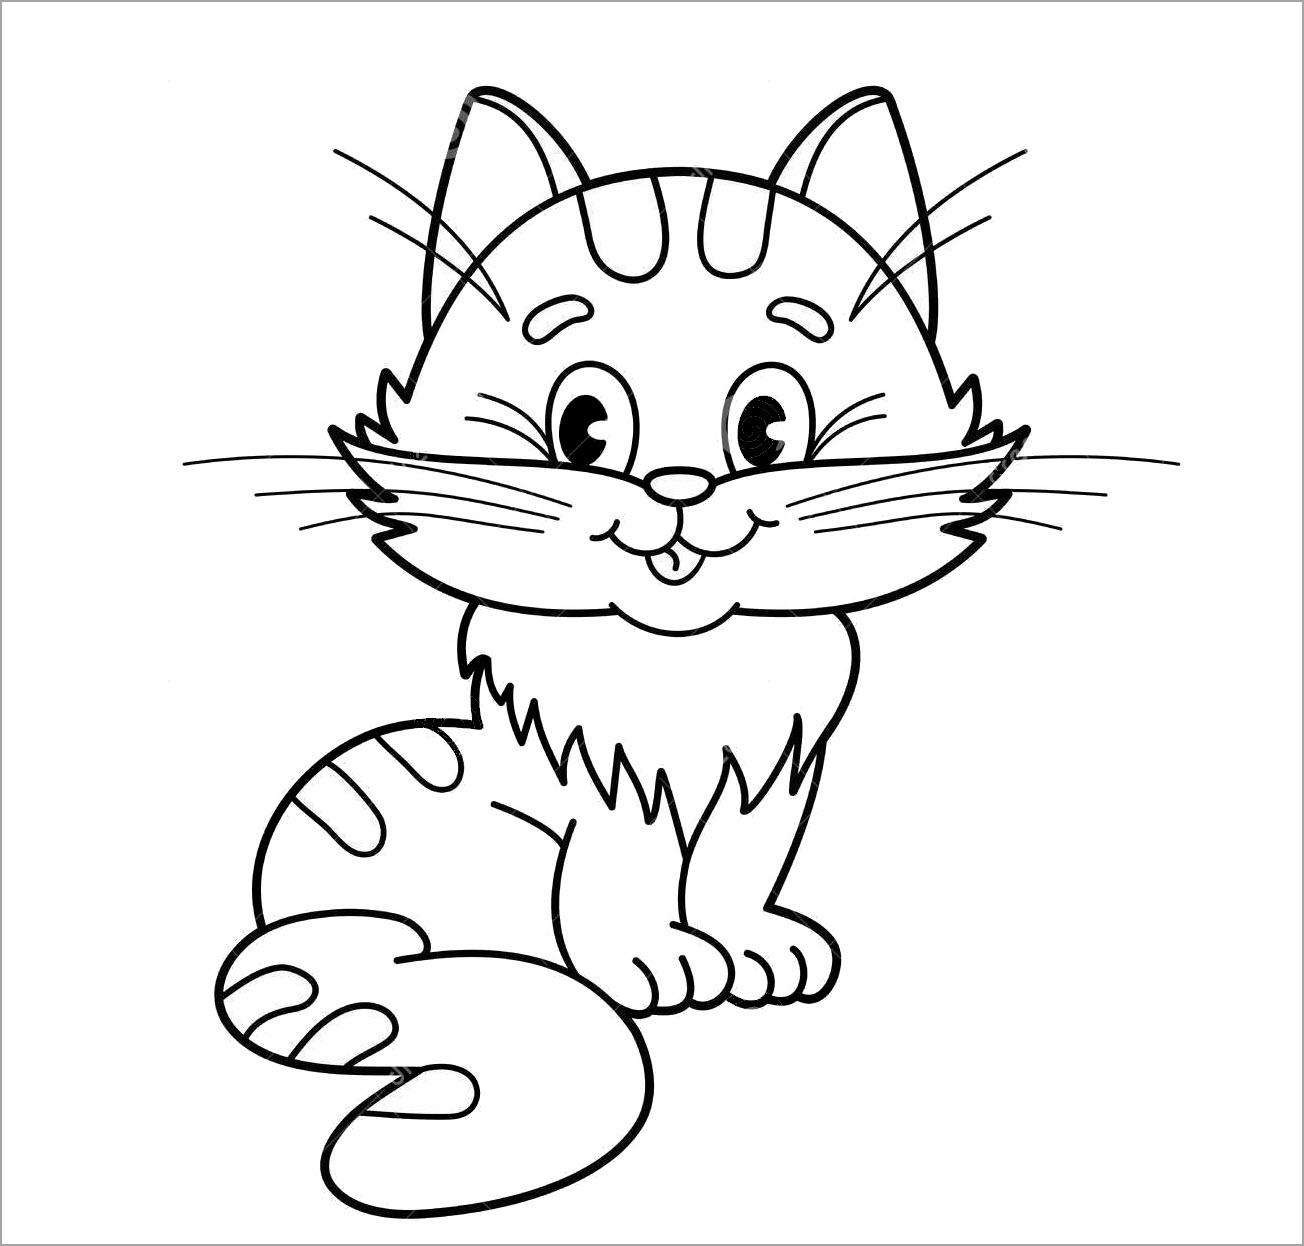 Xem hơn 100 ảnh về hình vẽ mặt mèo  NEC